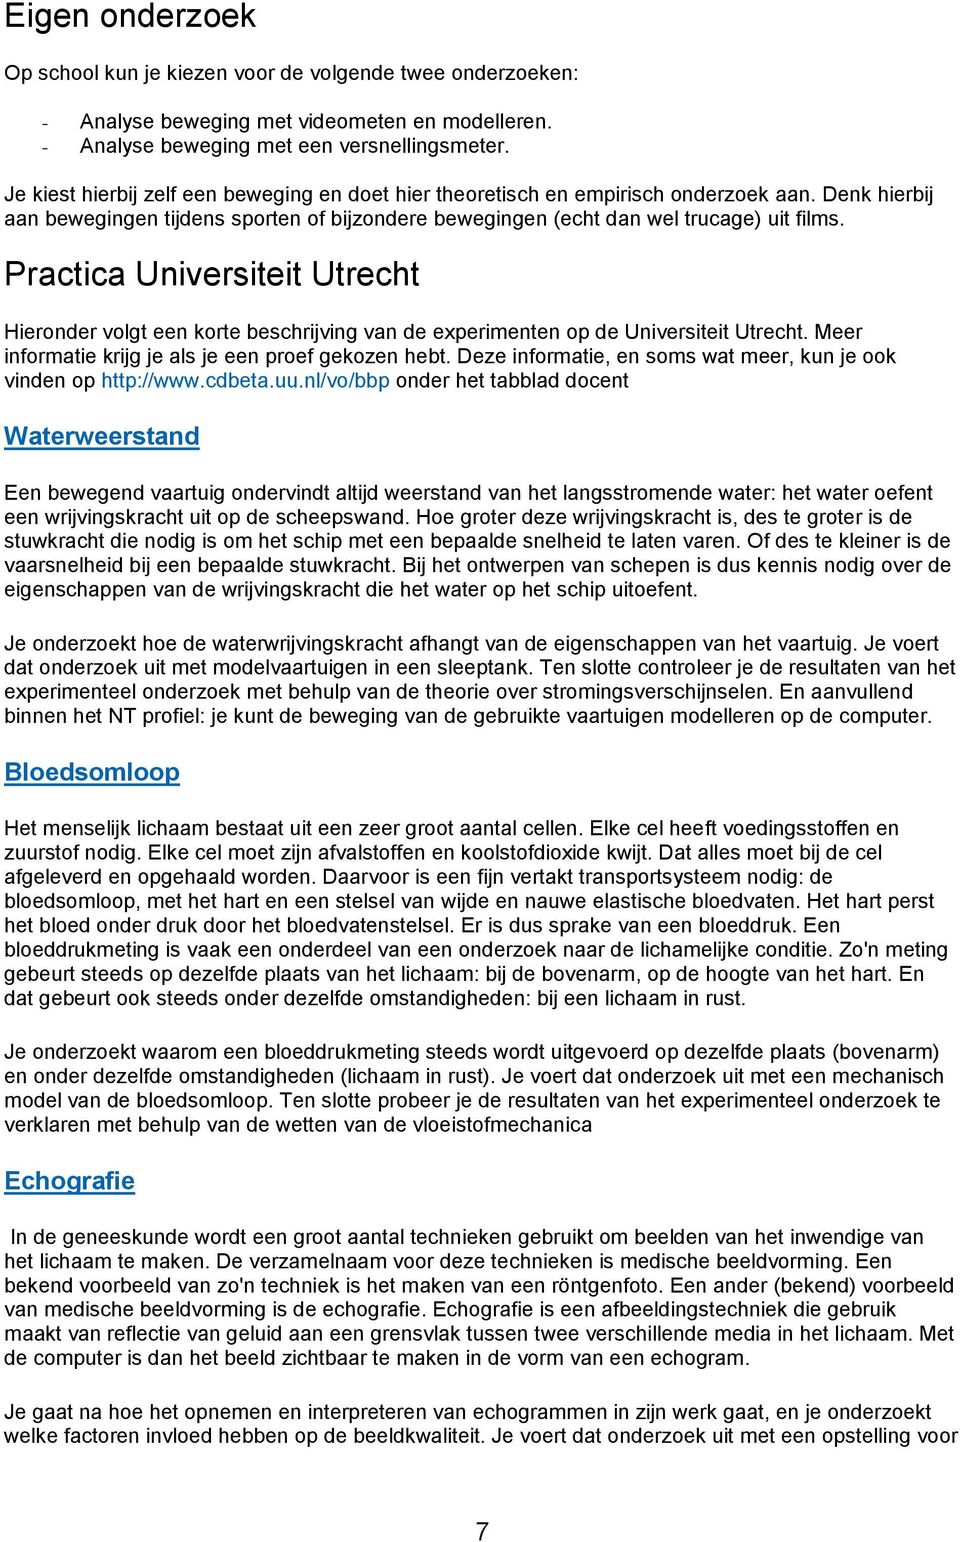 Practica Universiteit Utrecht Hieronder volgt een korte beschrijving van de experimenten op de Universiteit Utrecht. Meer informatie krijg je als je een proef gekozen hebt.